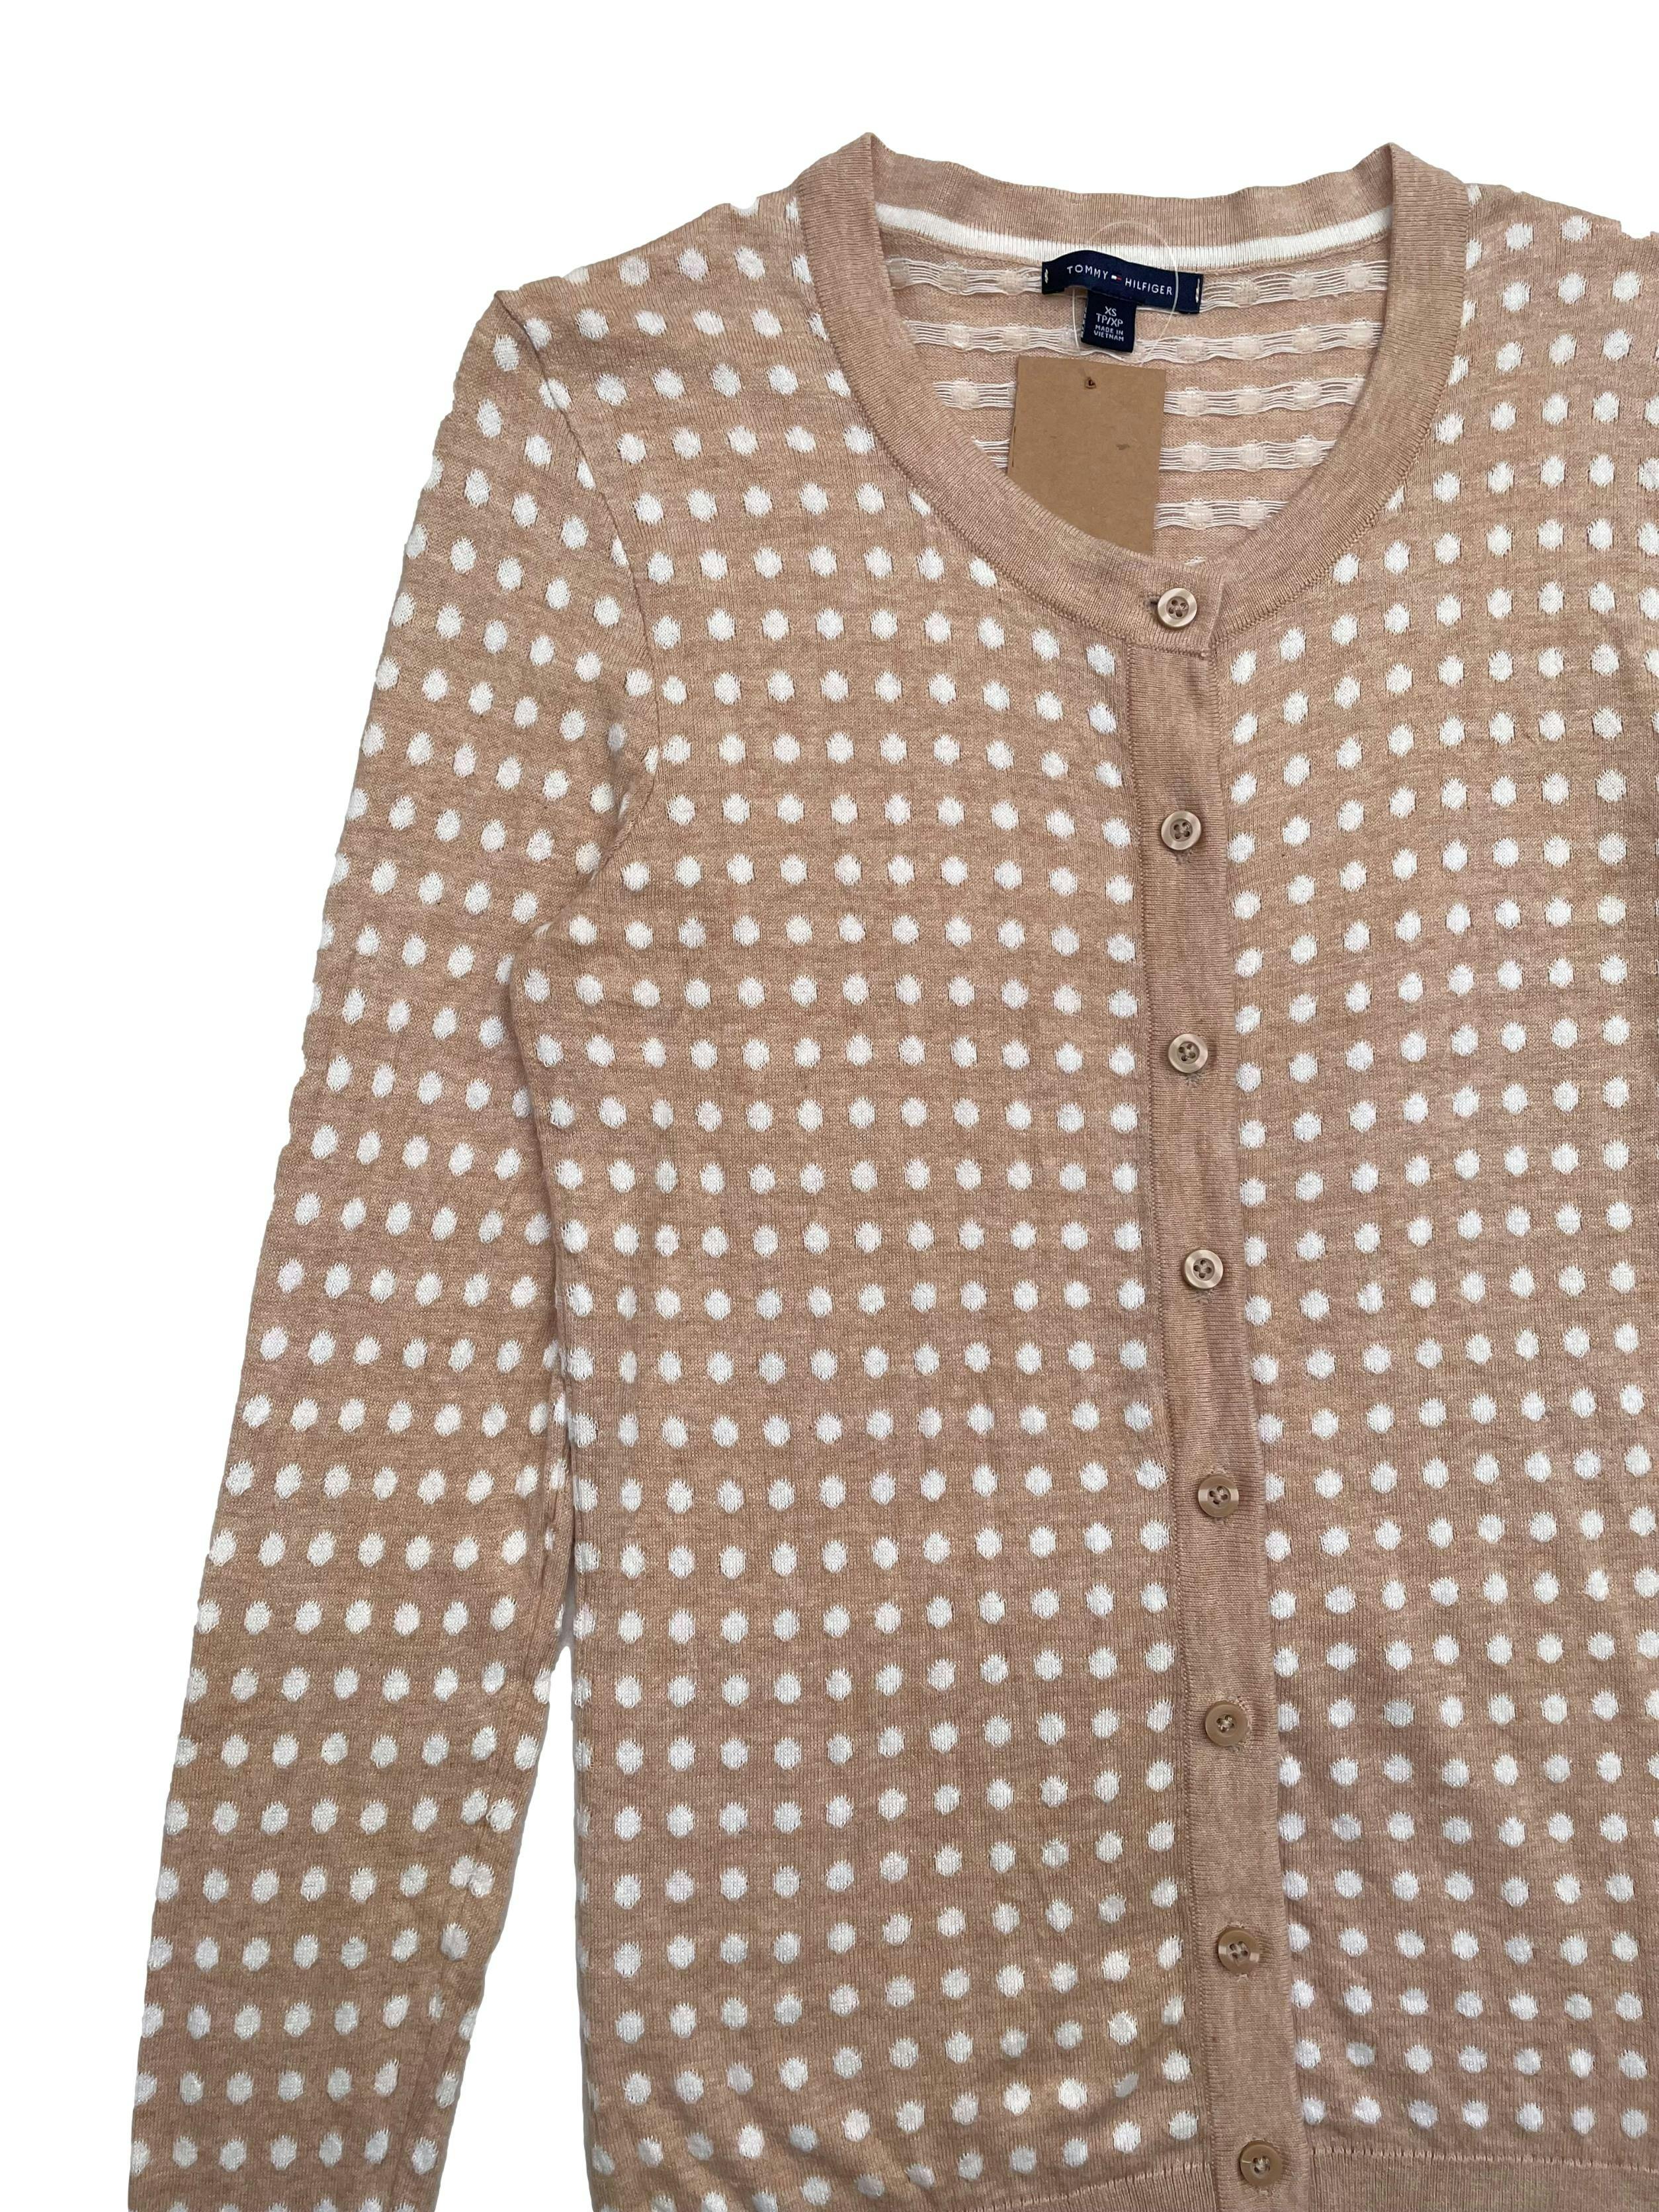 Cardigan Tommy Hilfiger color beige con polka dots blancos, 100% algodón. Largo 64cm. 